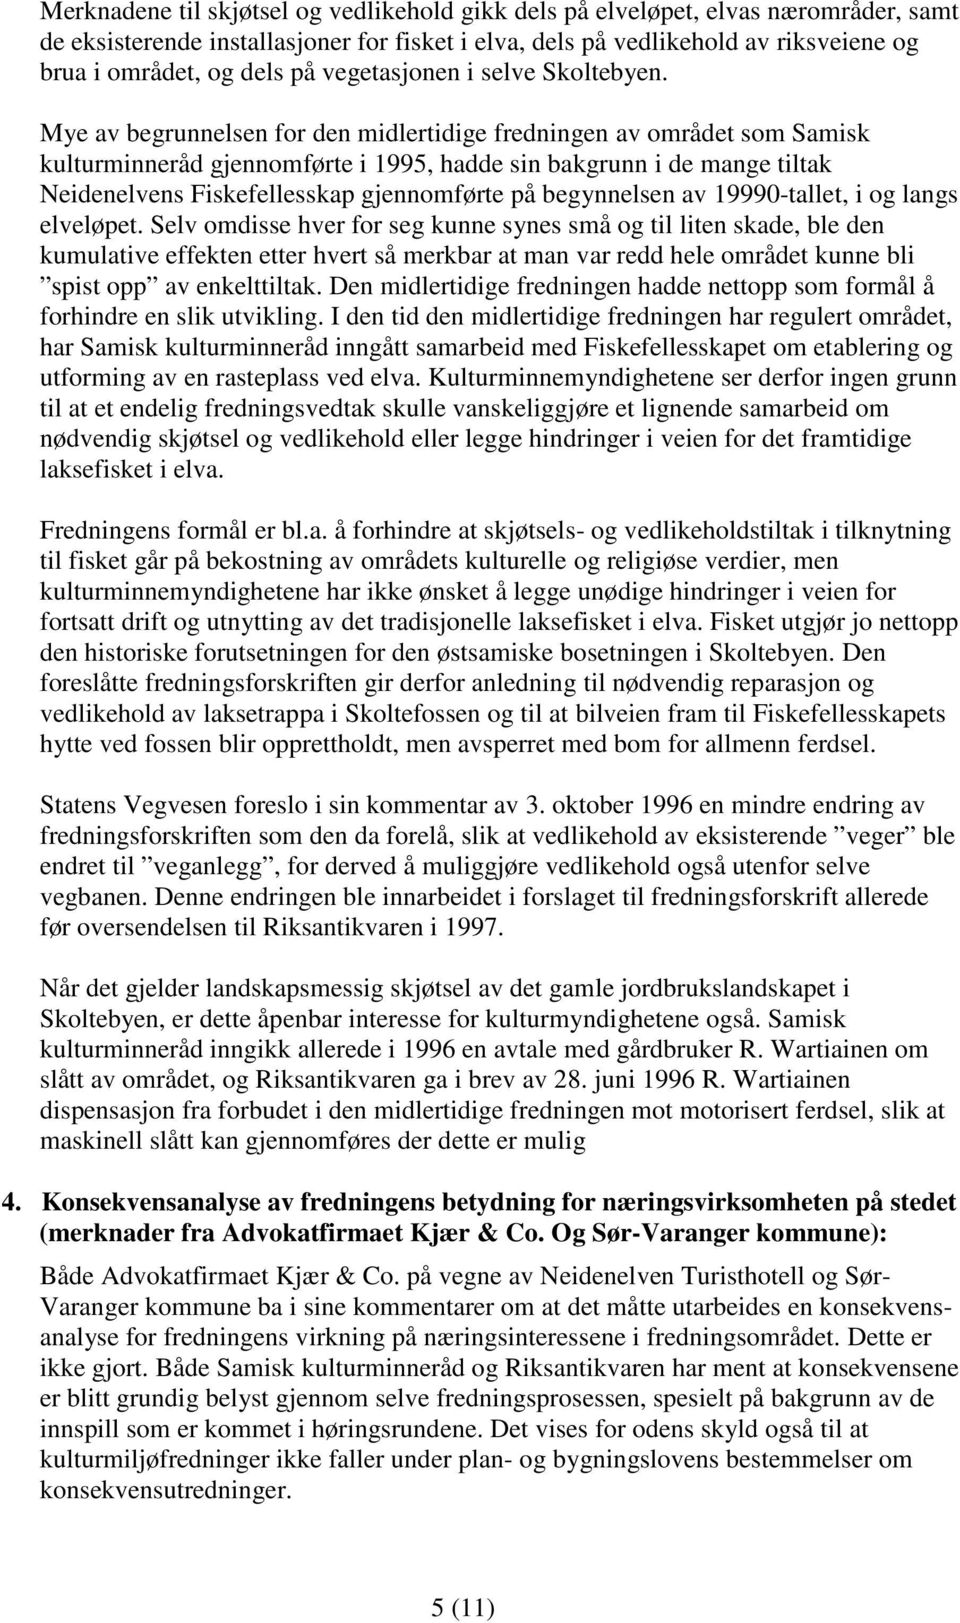 Mye av begrunnelsen for den midlertidige fredningen av området som Samisk kulturminneråd gjennomførte i 1995, hadde sin bakgrunn i de mange tiltak Neidenelvens Fiskefellesskap gjennomførte på